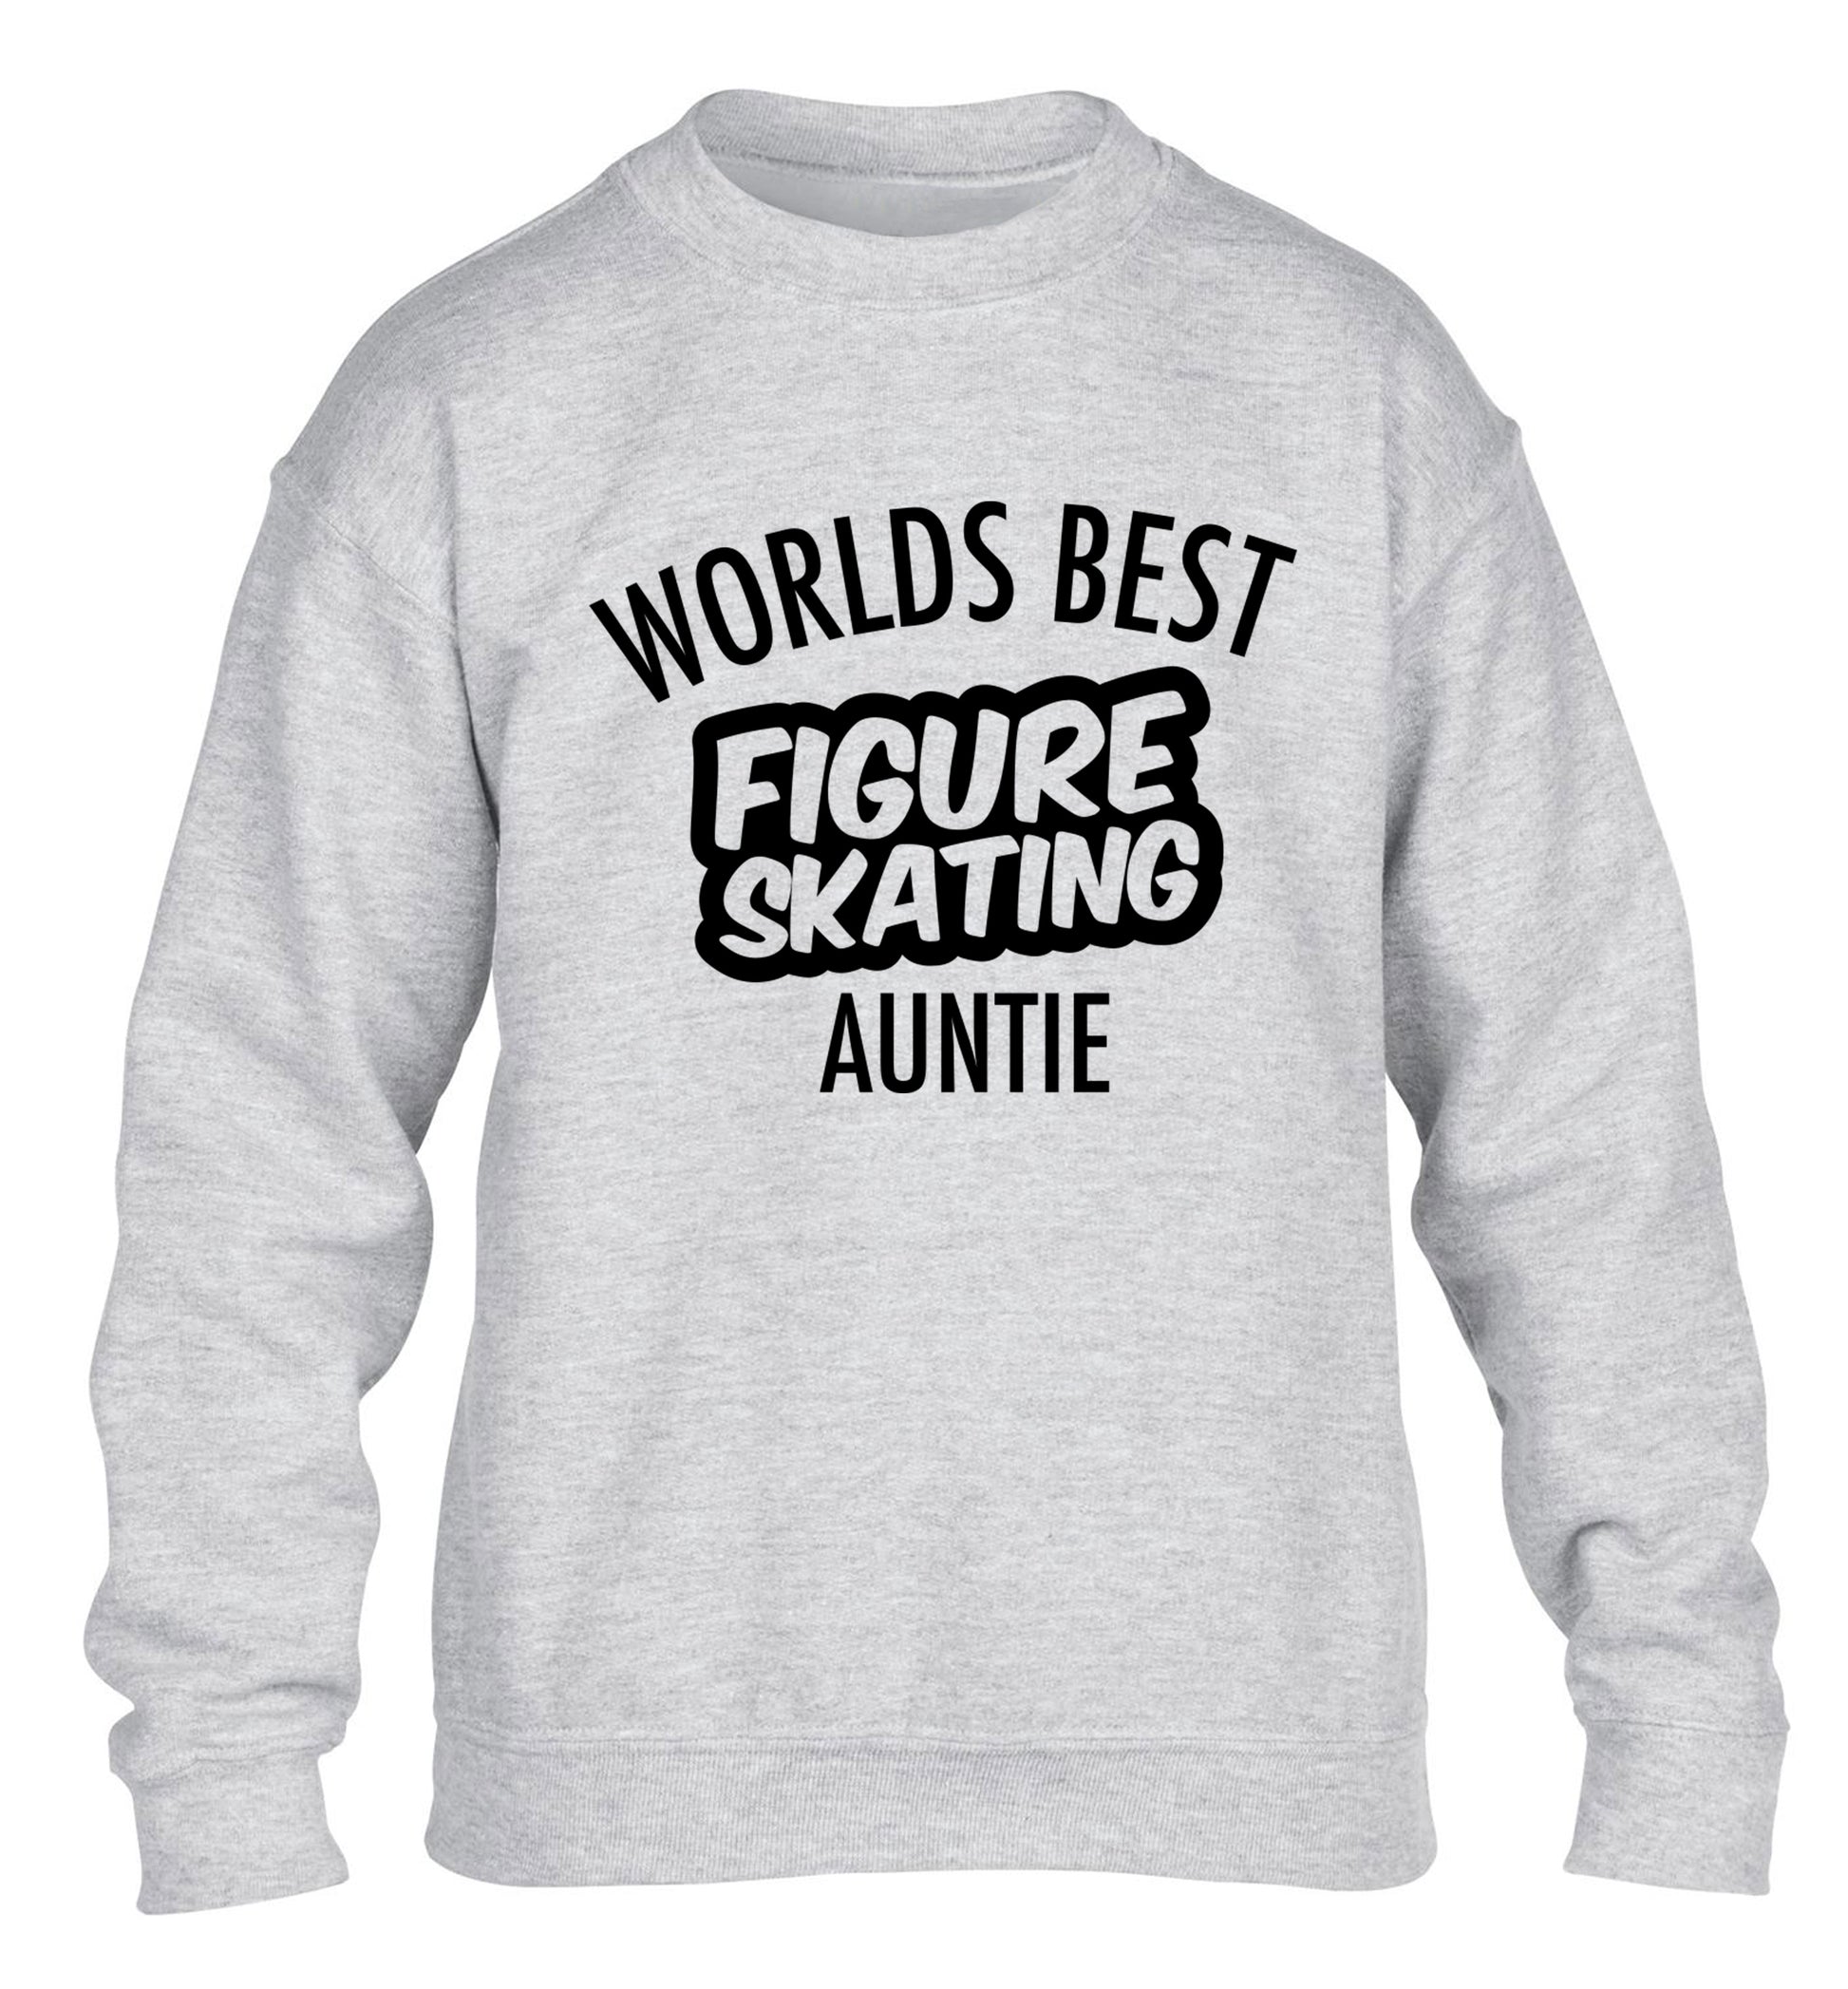 Worlds best figure skating auntie children's grey sweater 12-14 Years